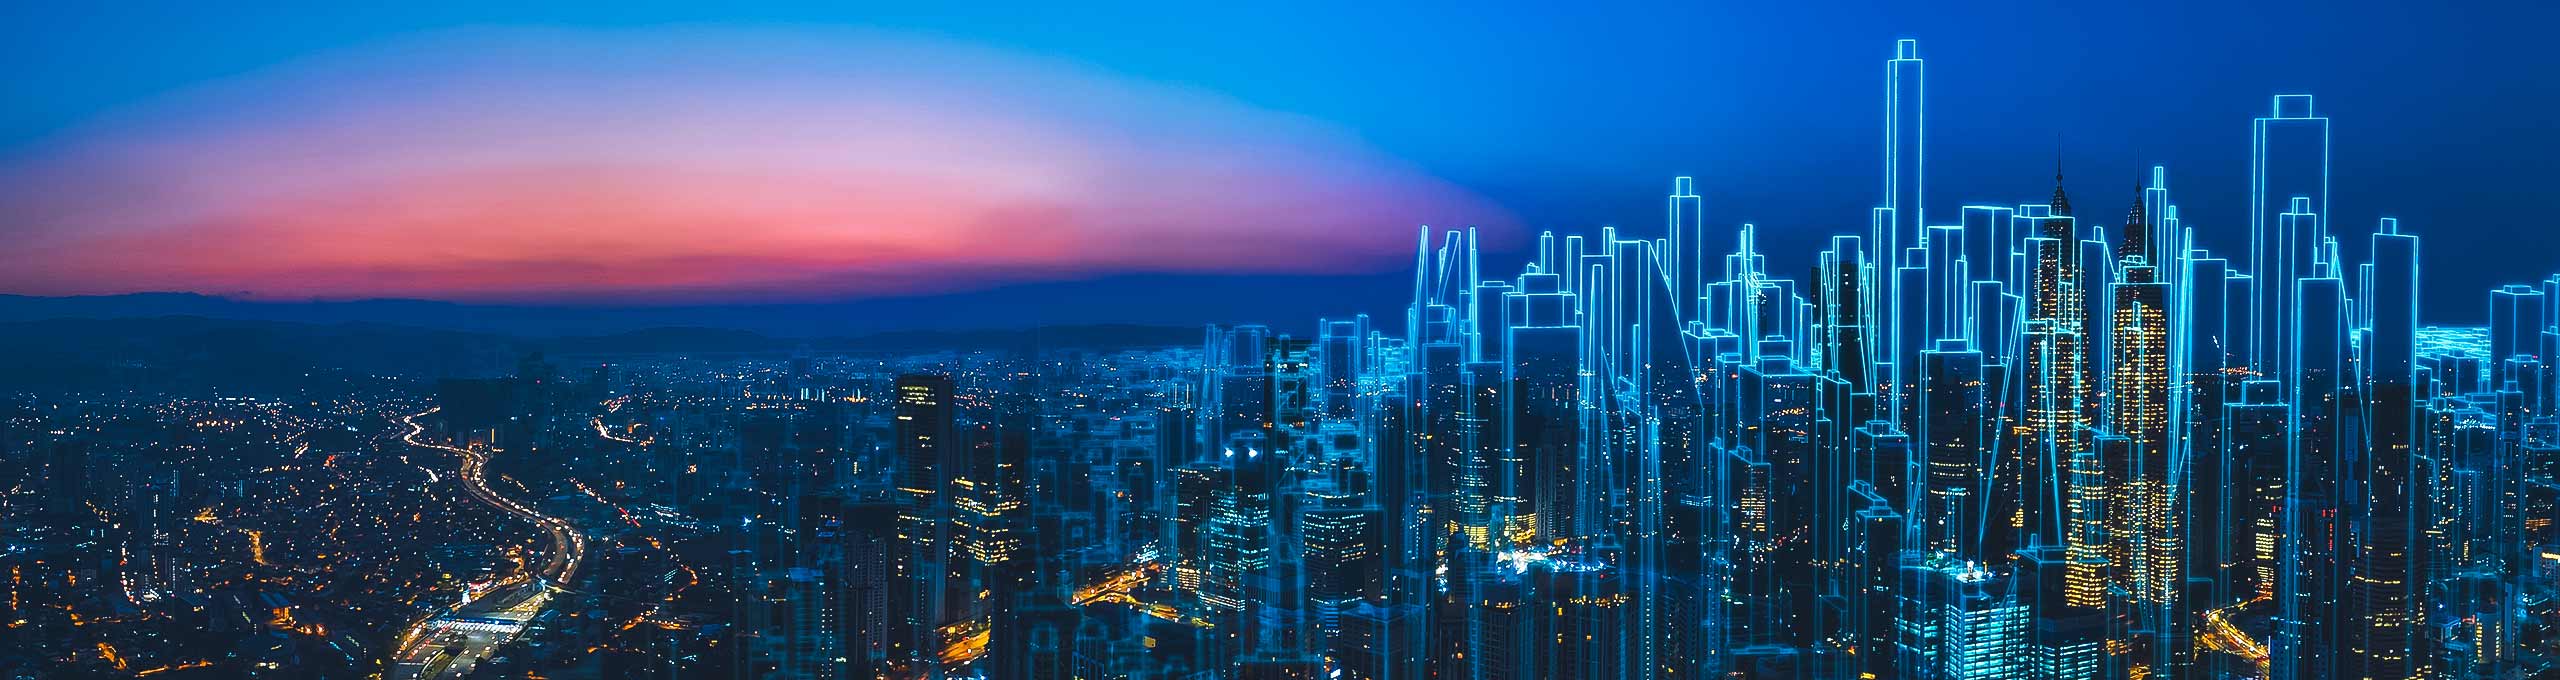 Digitalisierte Perspektive der Menschen in einer Smart City